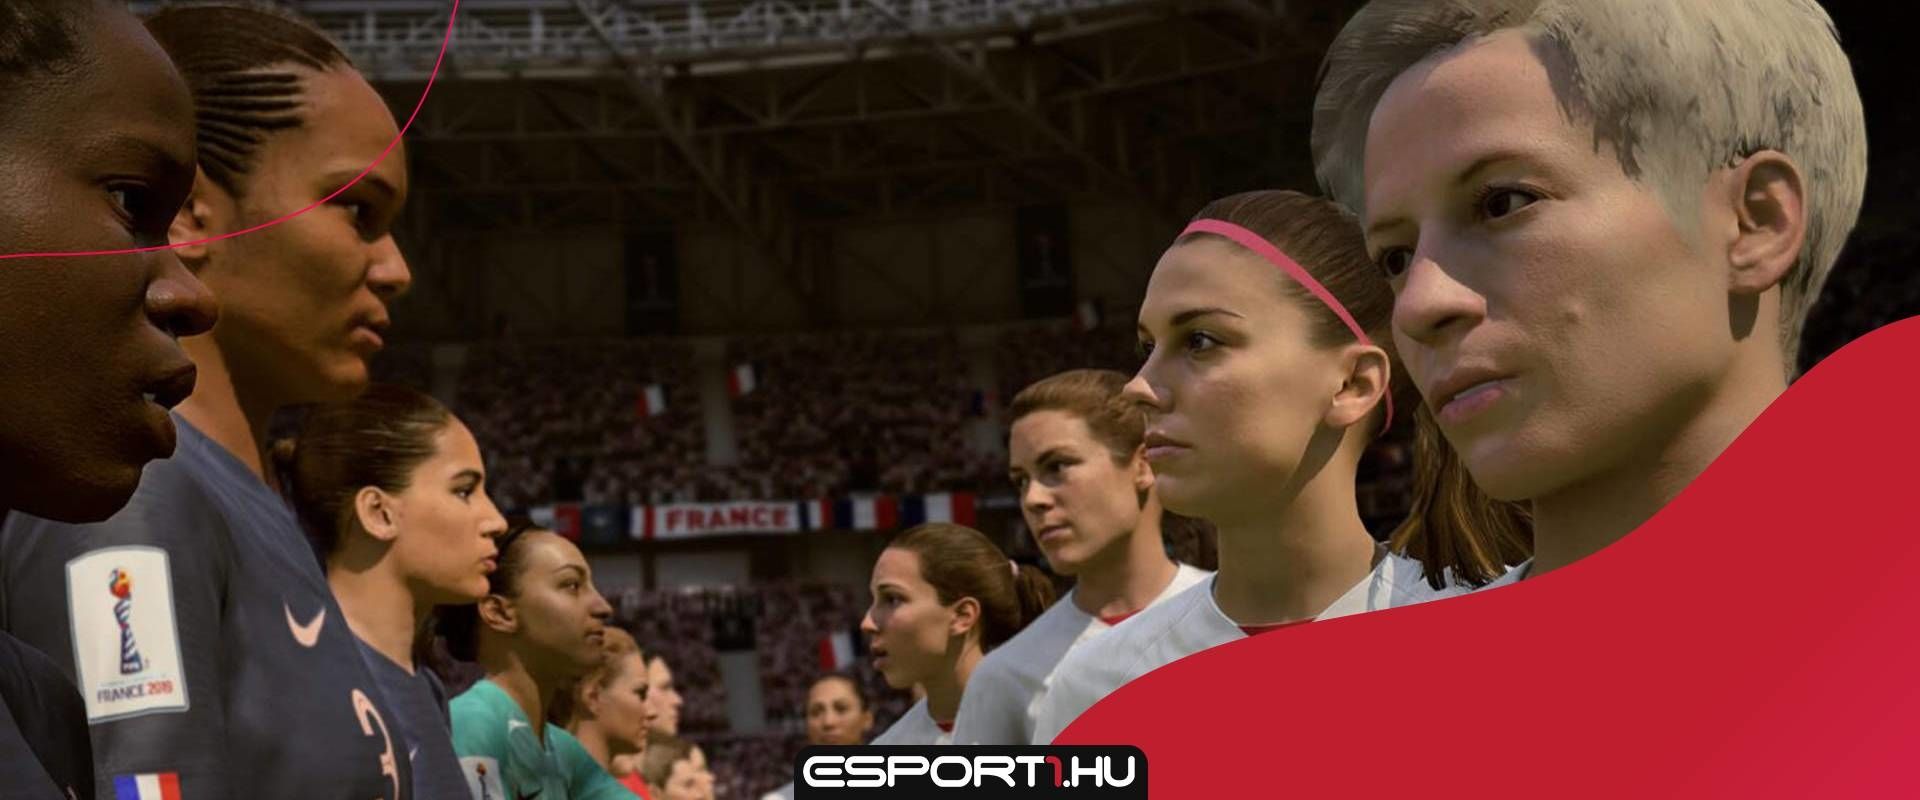 90 feletti ratinget kaptak a FIFA21 legjobb női játékosai, és magyar is van köztük